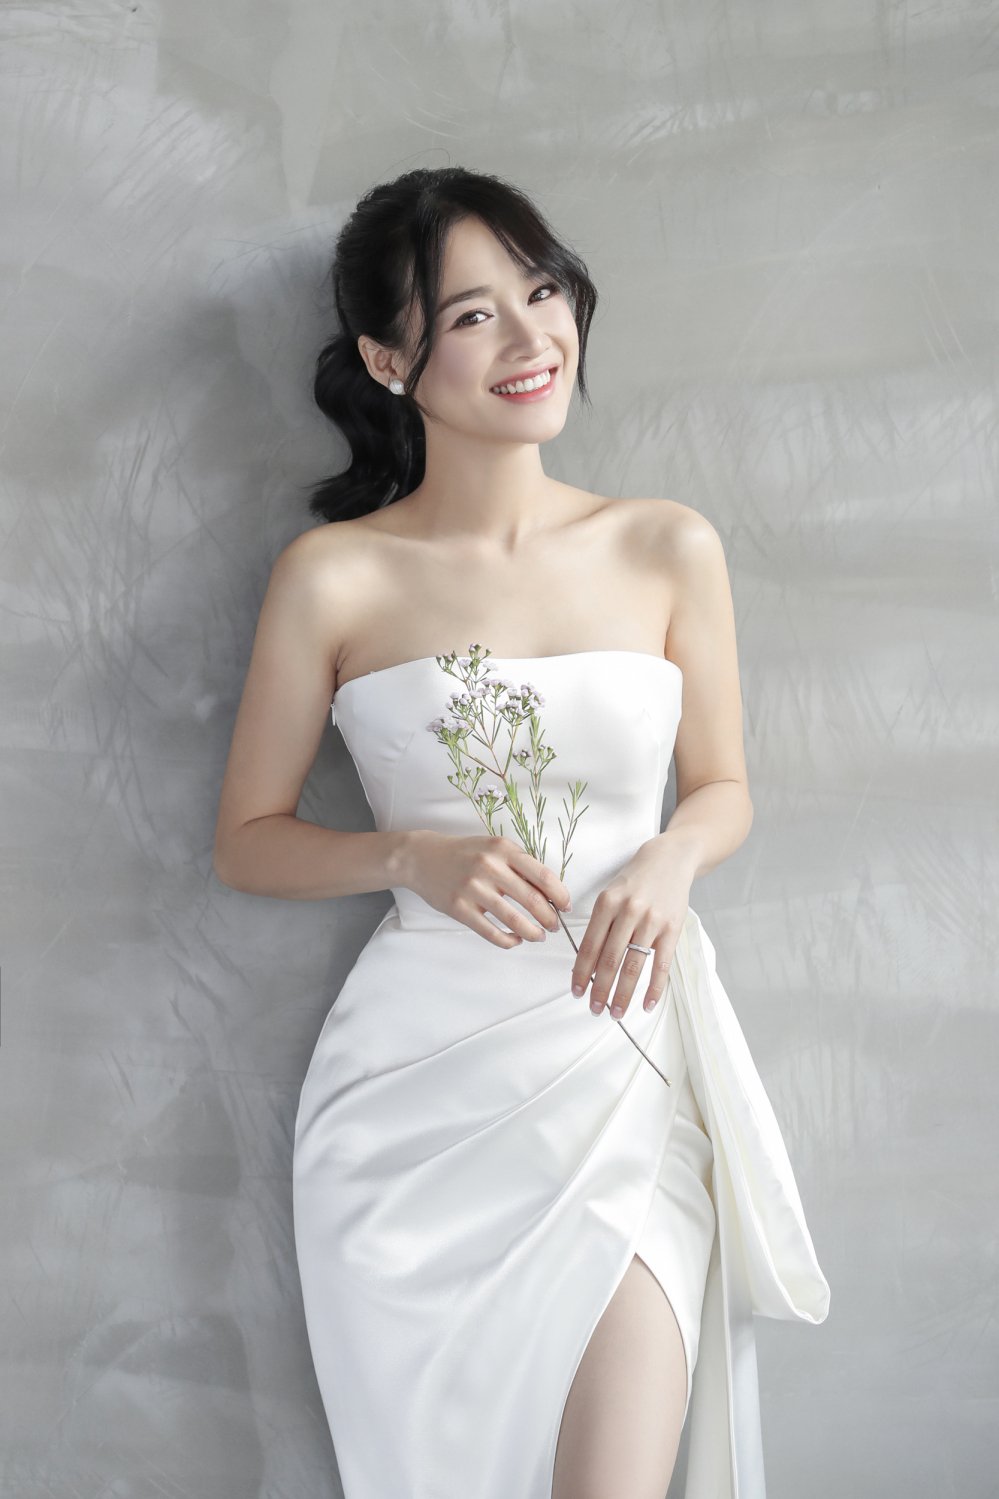 Loạt ảnh hậu trường thử váy cưới đẹp như mơ của Nhã Phương chính thức được  hé lộ